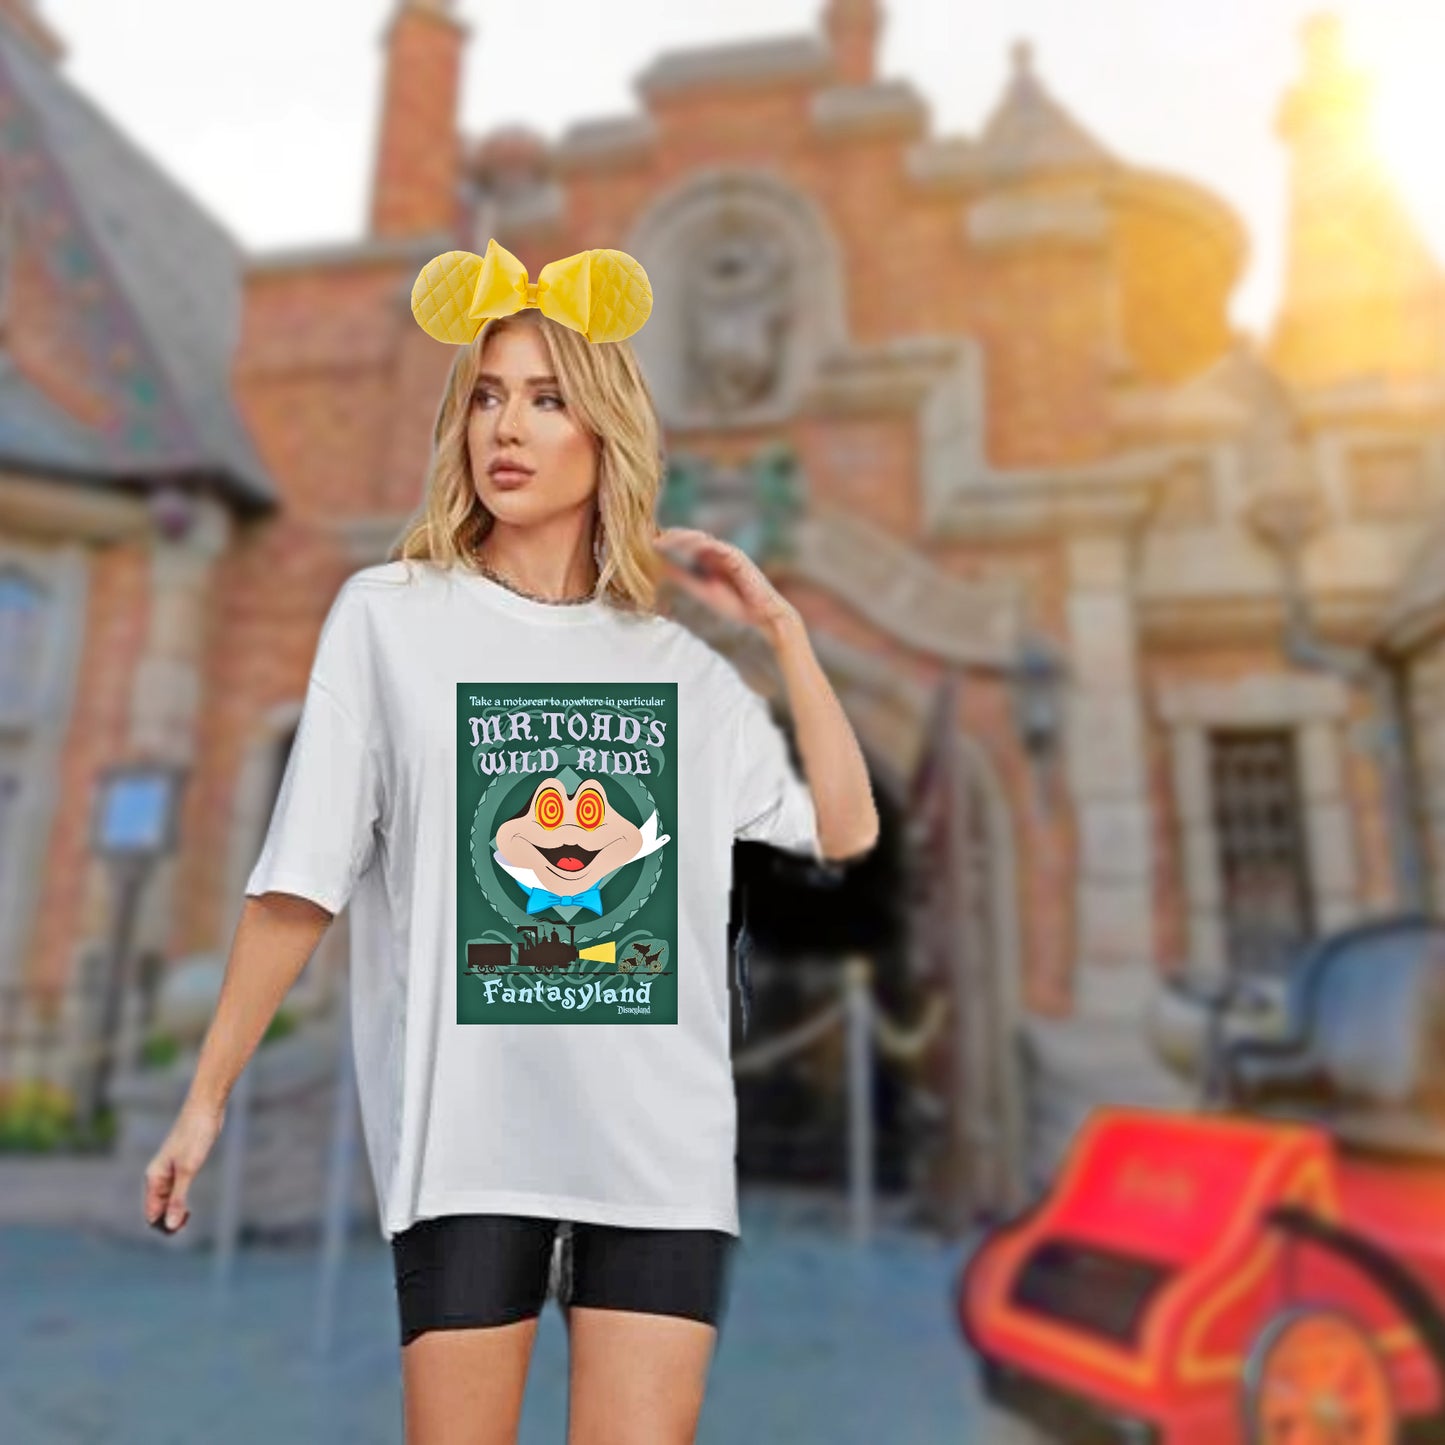 Mr. Toad's Wild ride Disneyland T-shirt